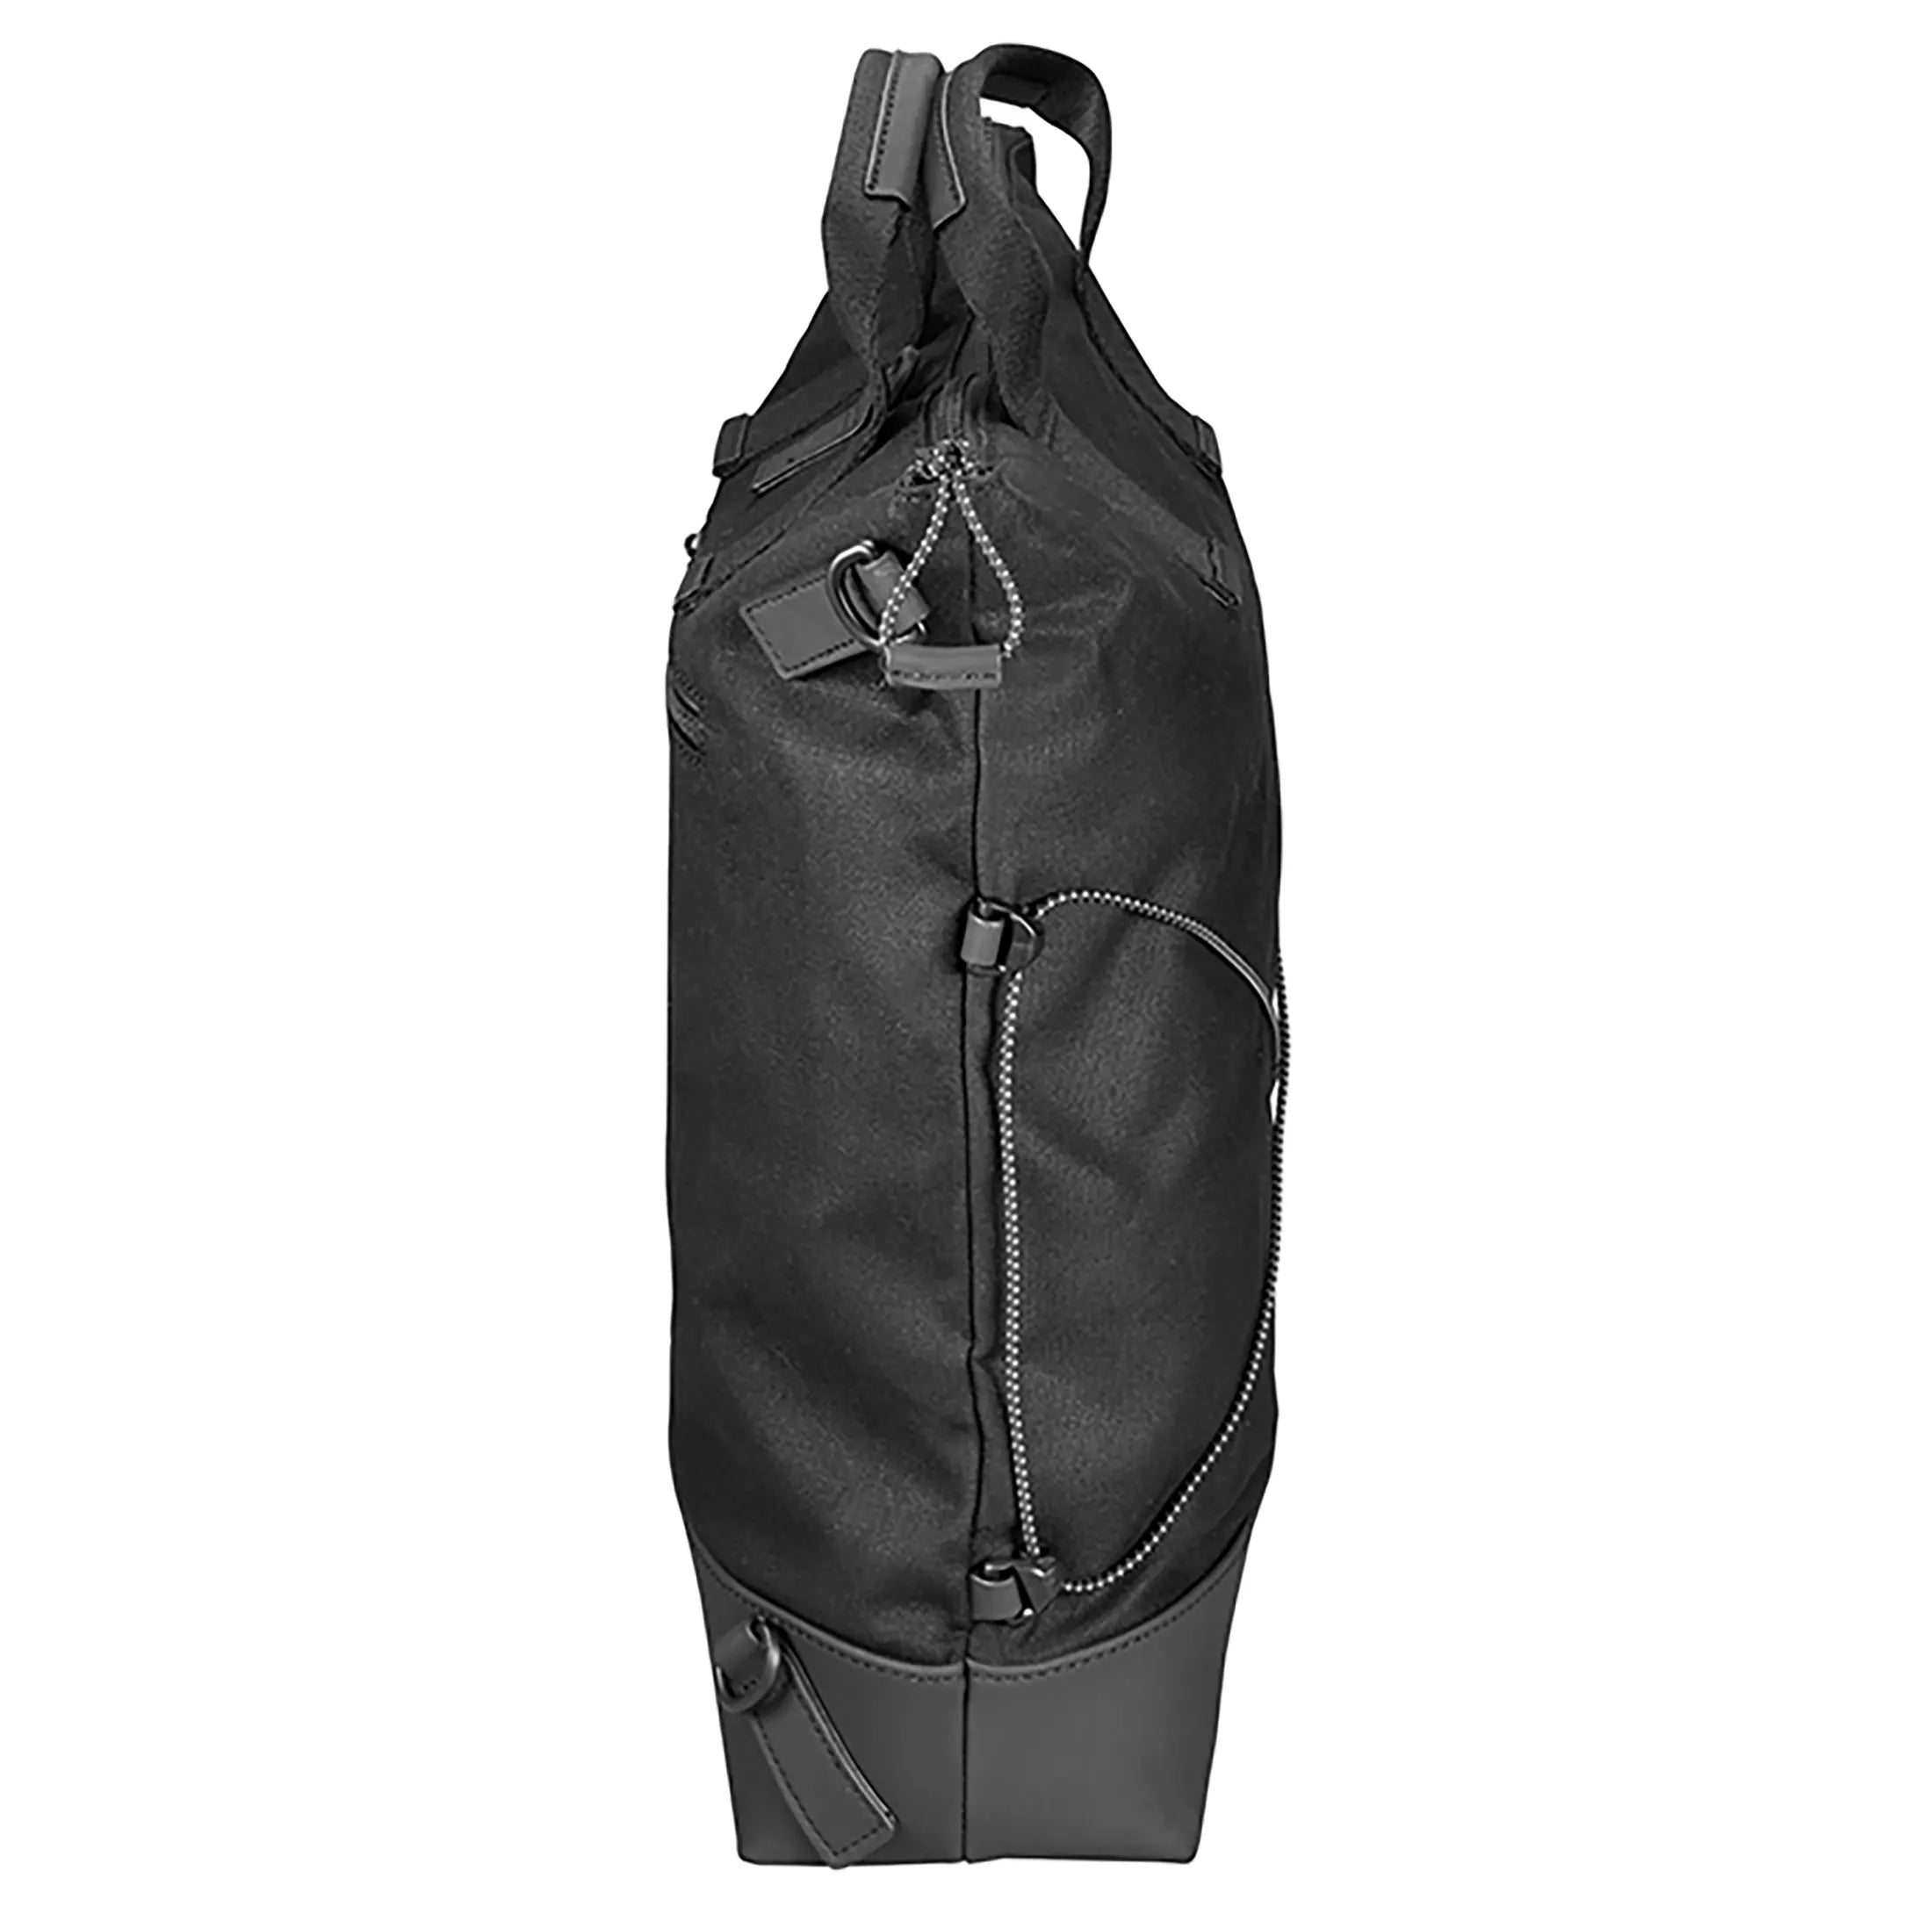 Jost Ystad XChange Bag sac à bandoulière fonction sac à dos 40 cm - olive